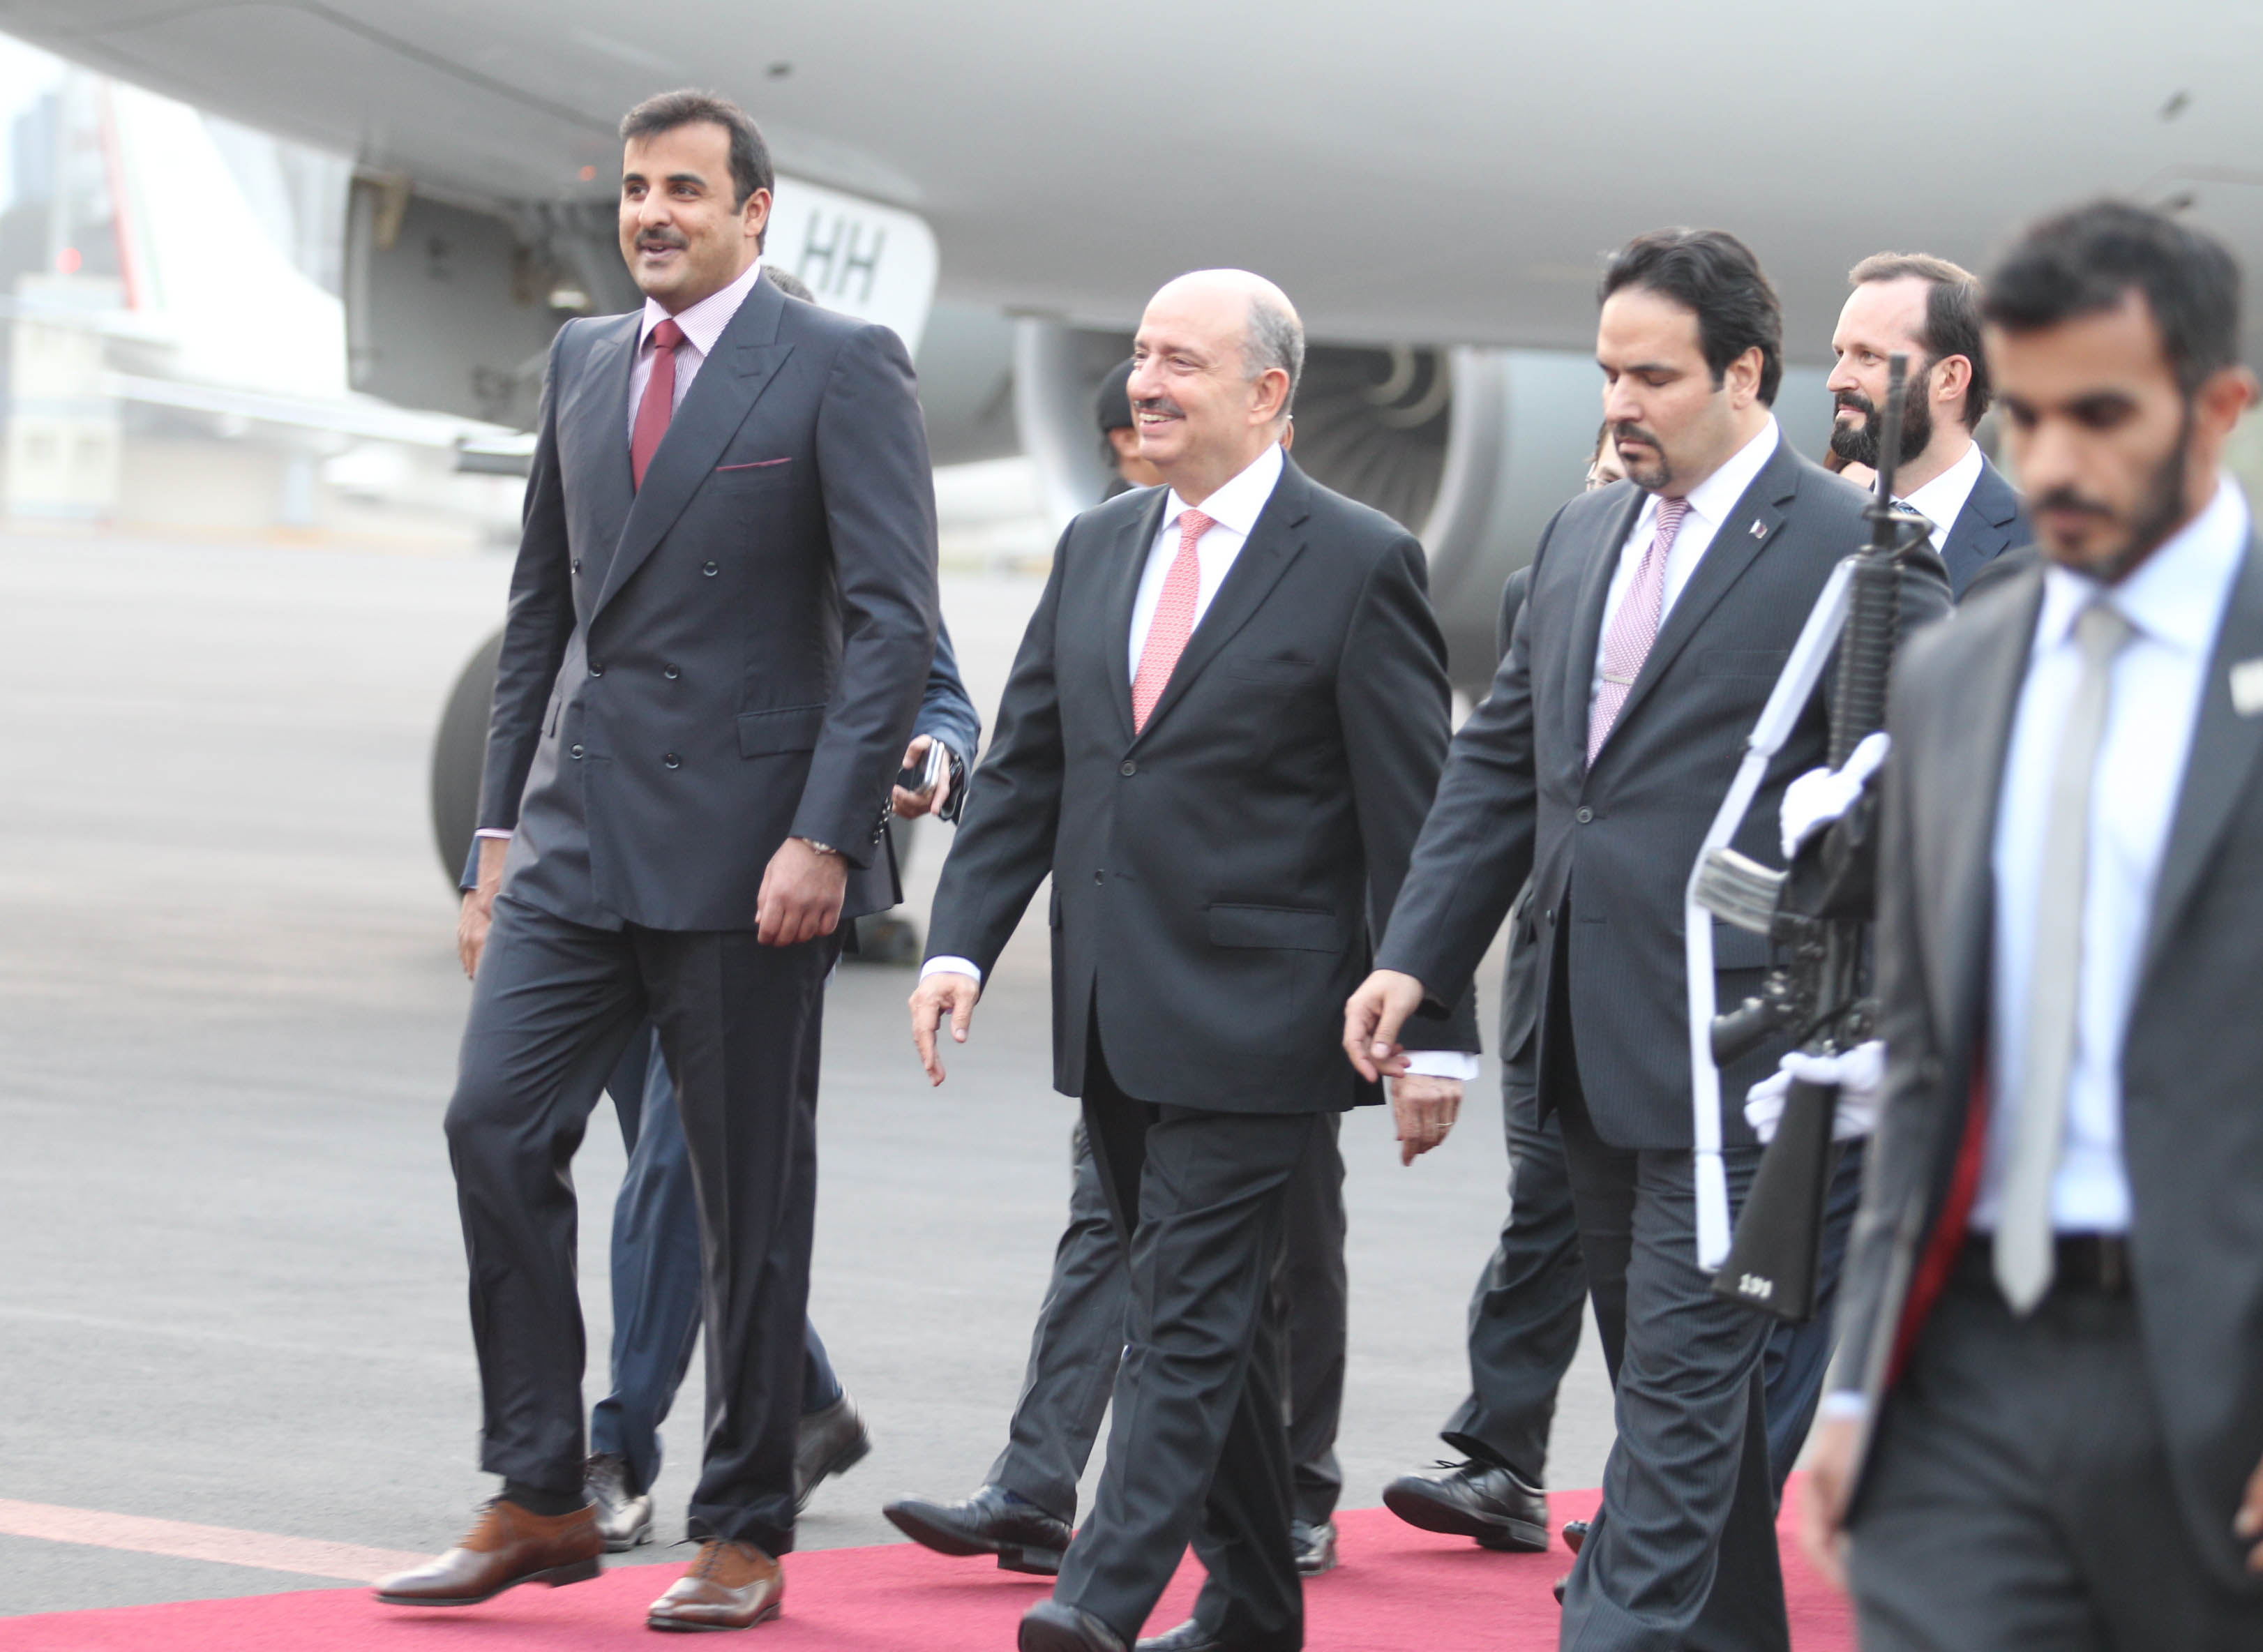 FOTO 2 Su Alteza  el Emir de Qatar  Jeque Tamim bin Hamad Al Thani   fue recibido por el Embajador Carlos de Icaza.jpg